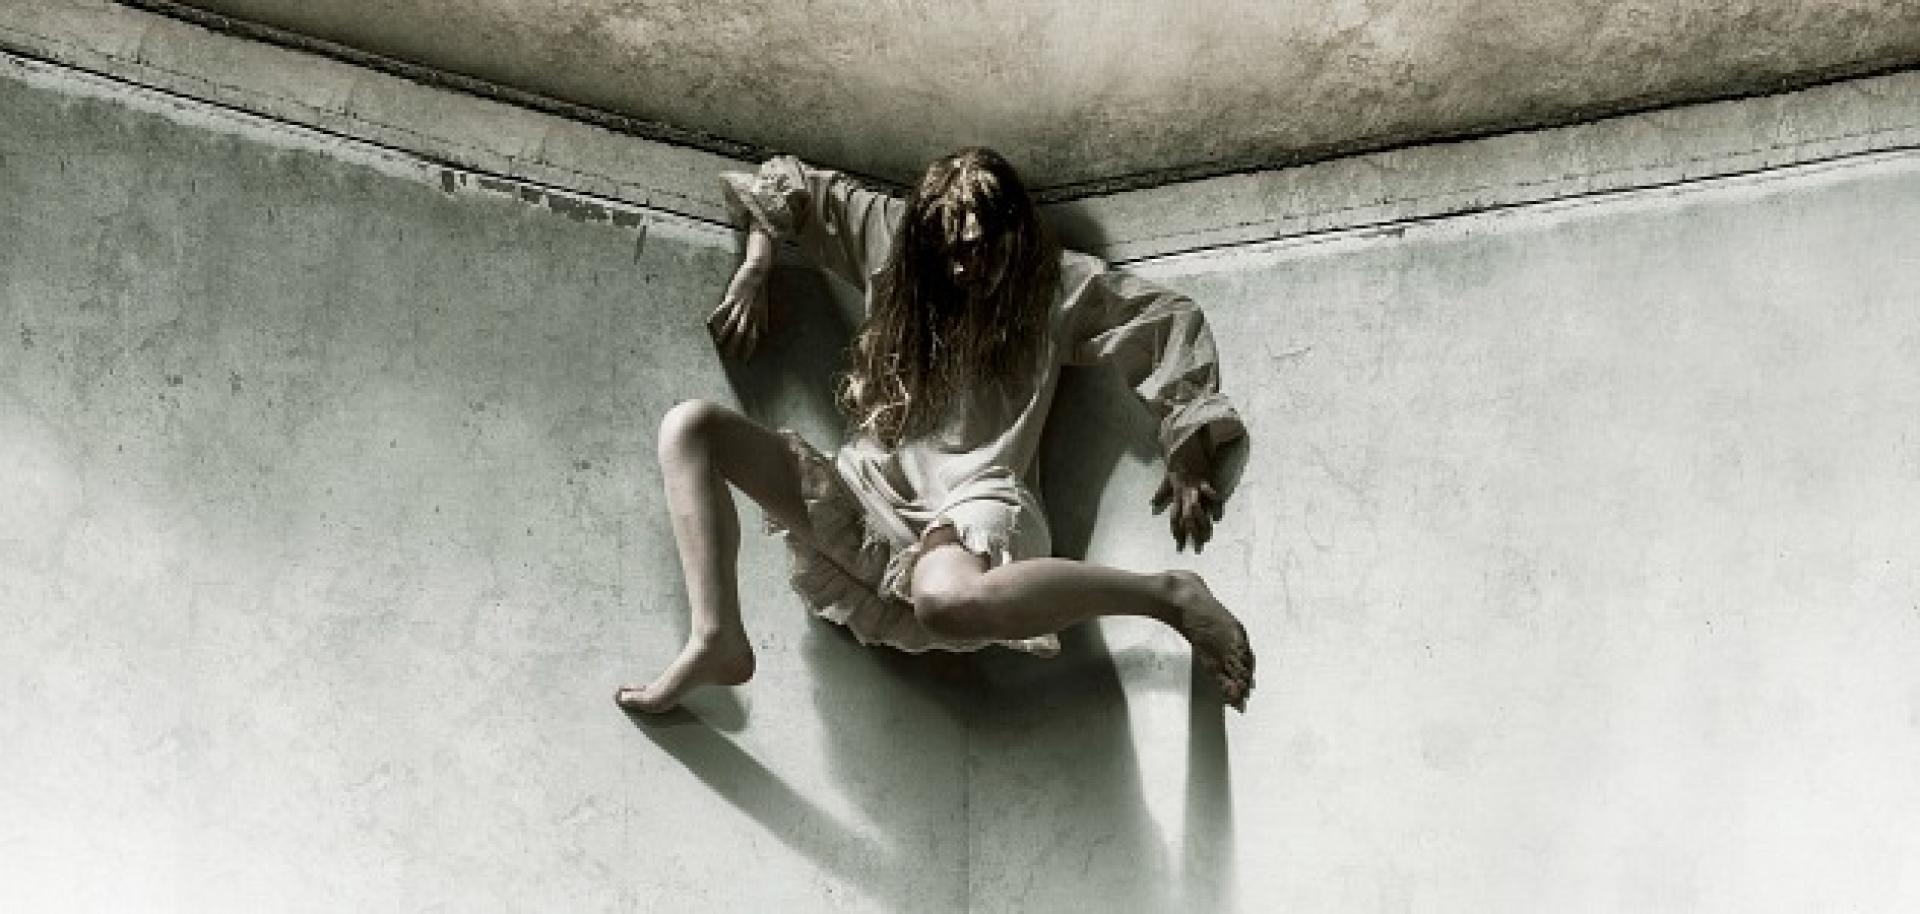 The Last Exorcism - Az utolsó ördögűzés (2010)